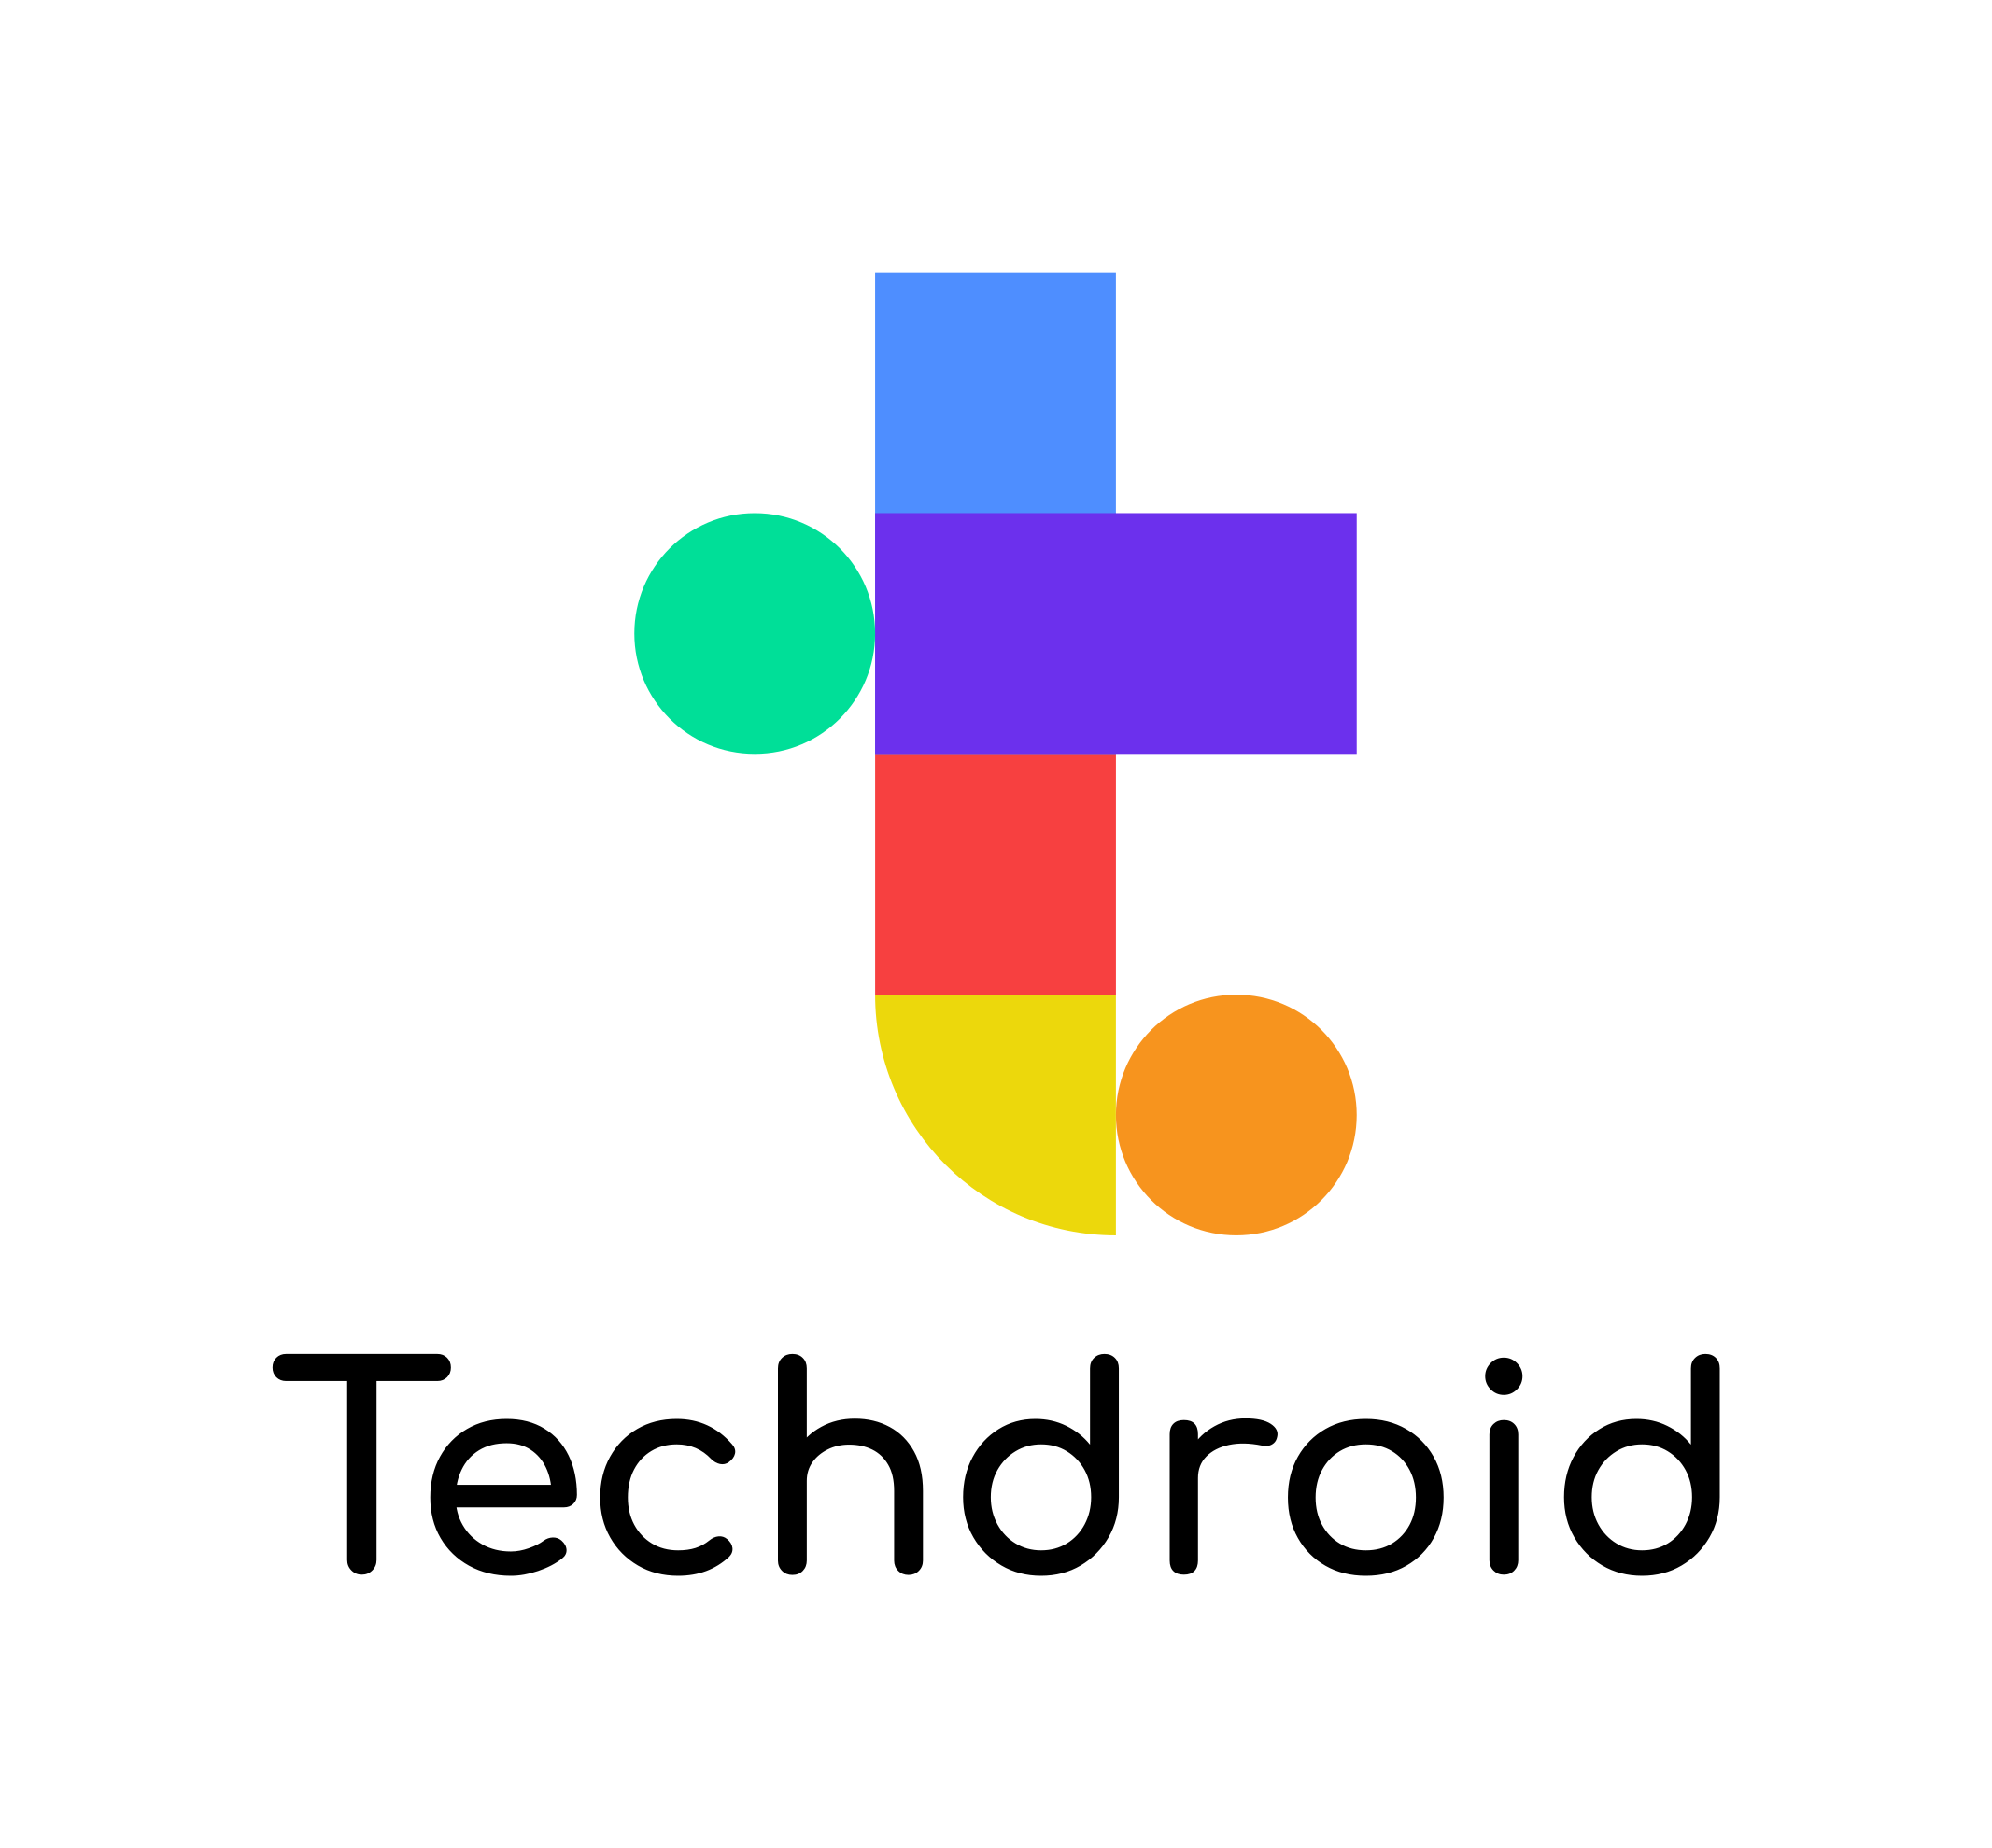 Techdroid Inc